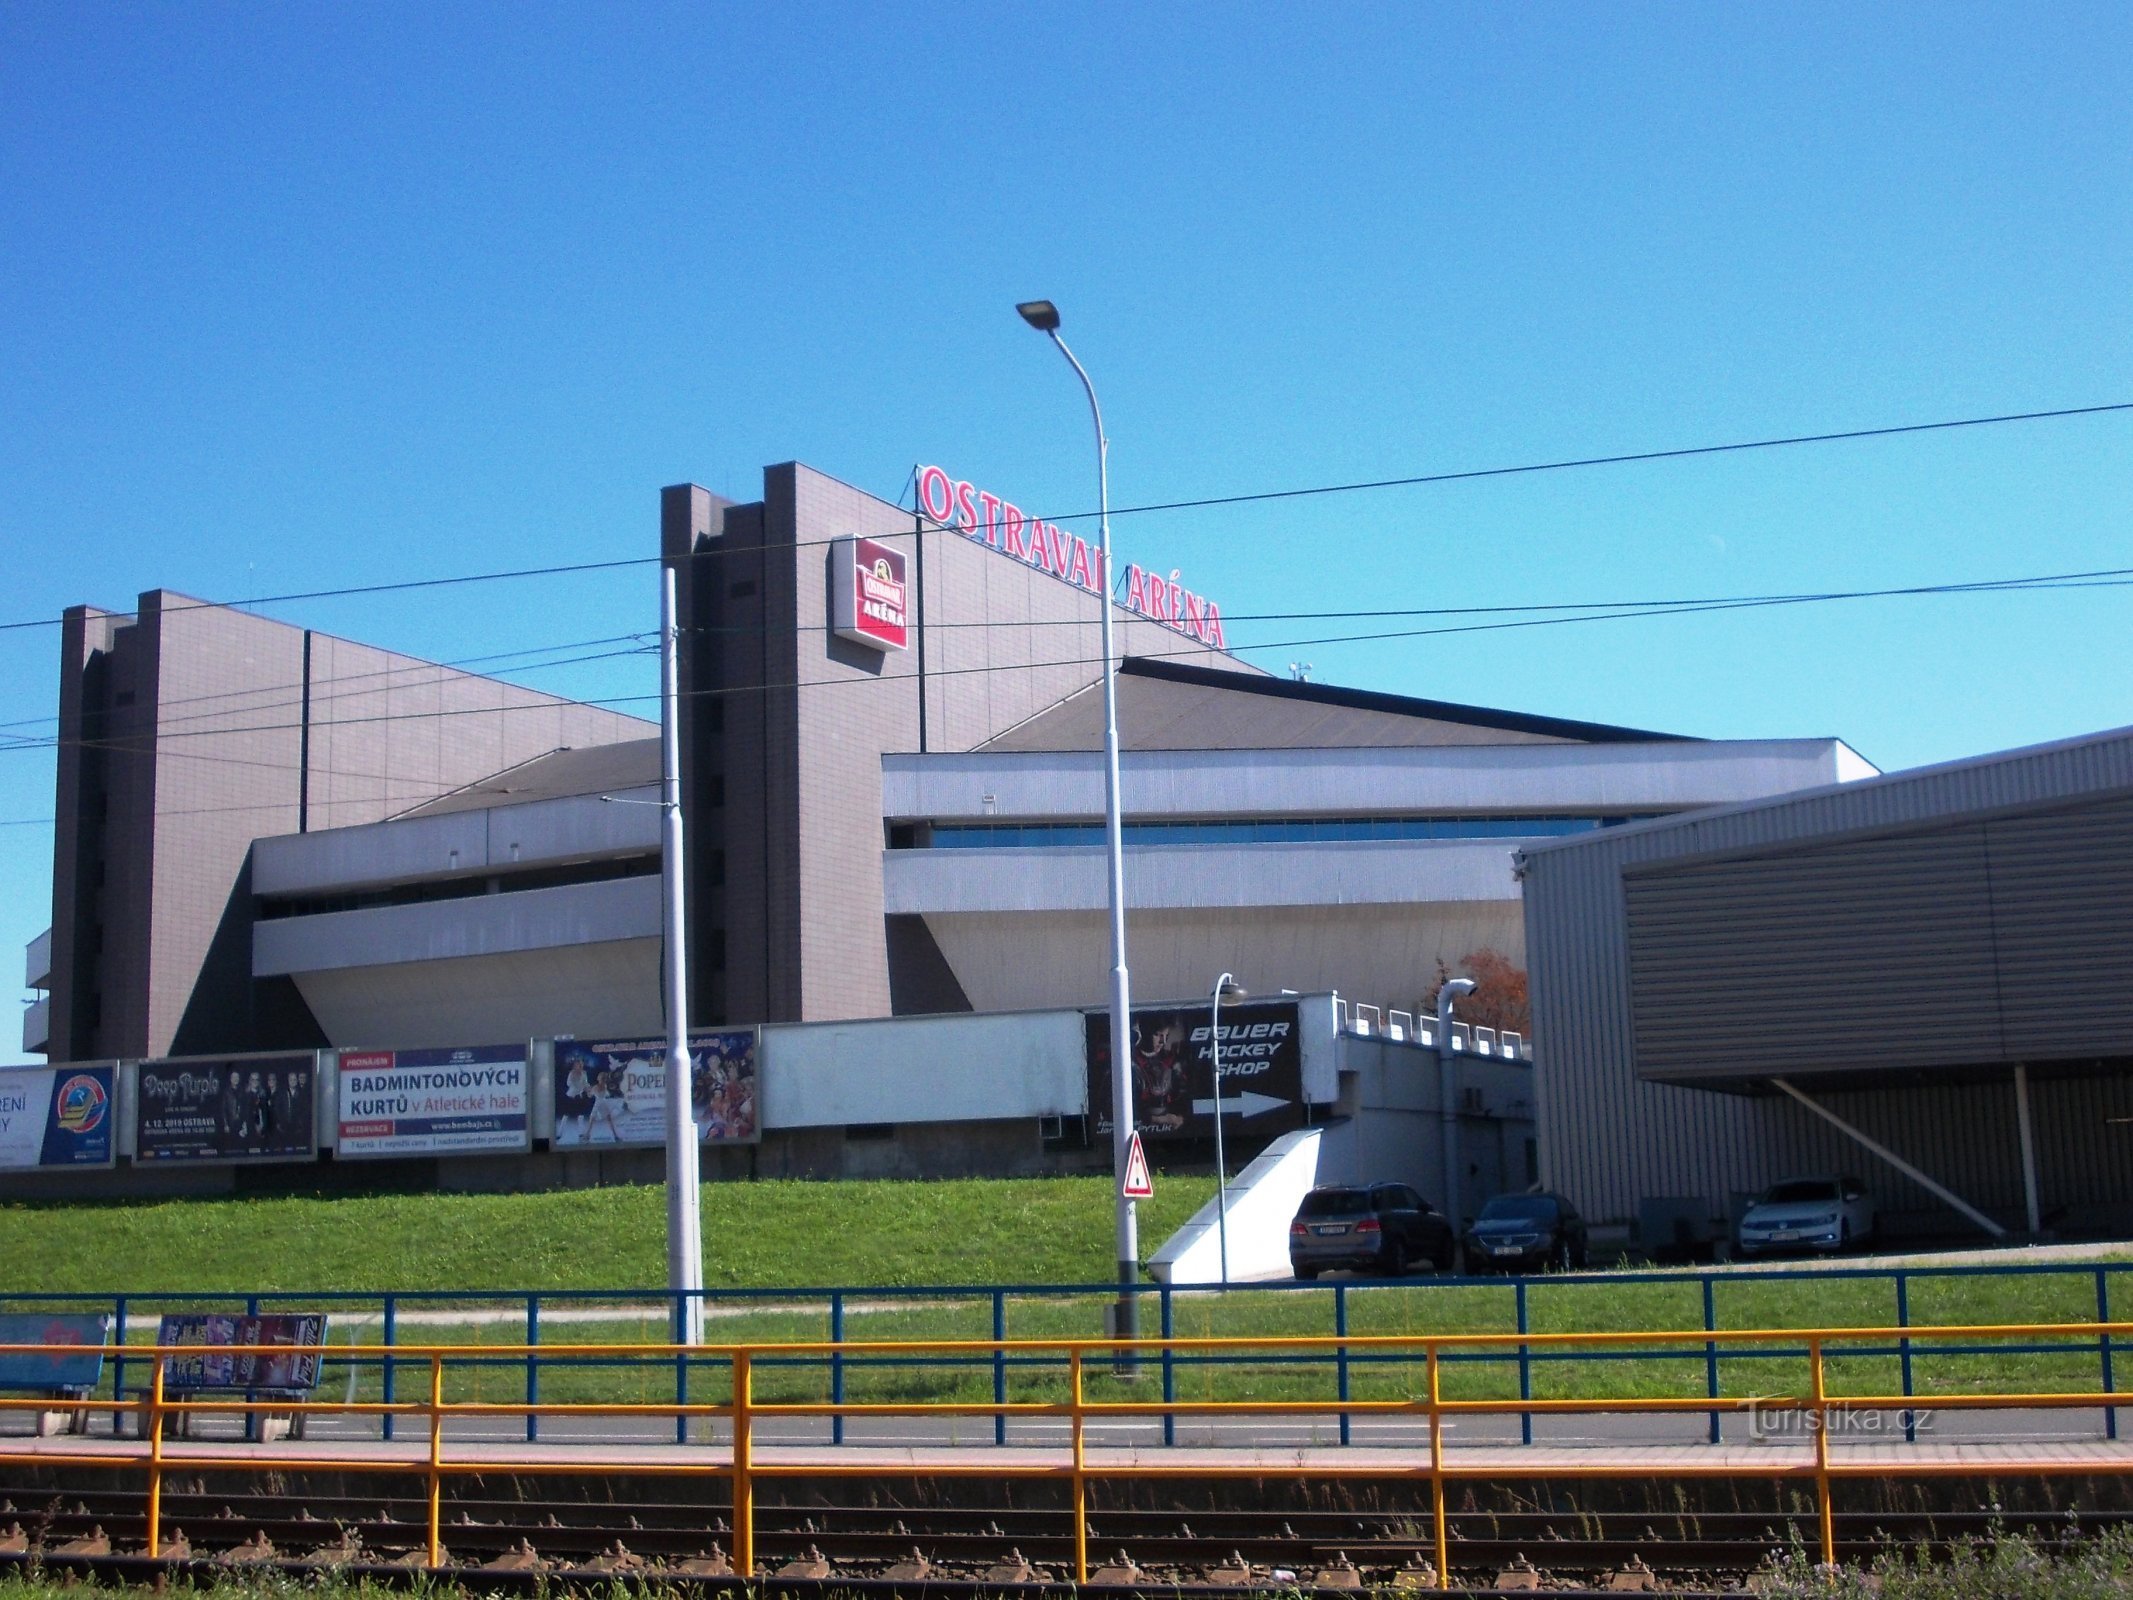 Ostravar Arena - die feierliche Eröffnung fand 1986 statt